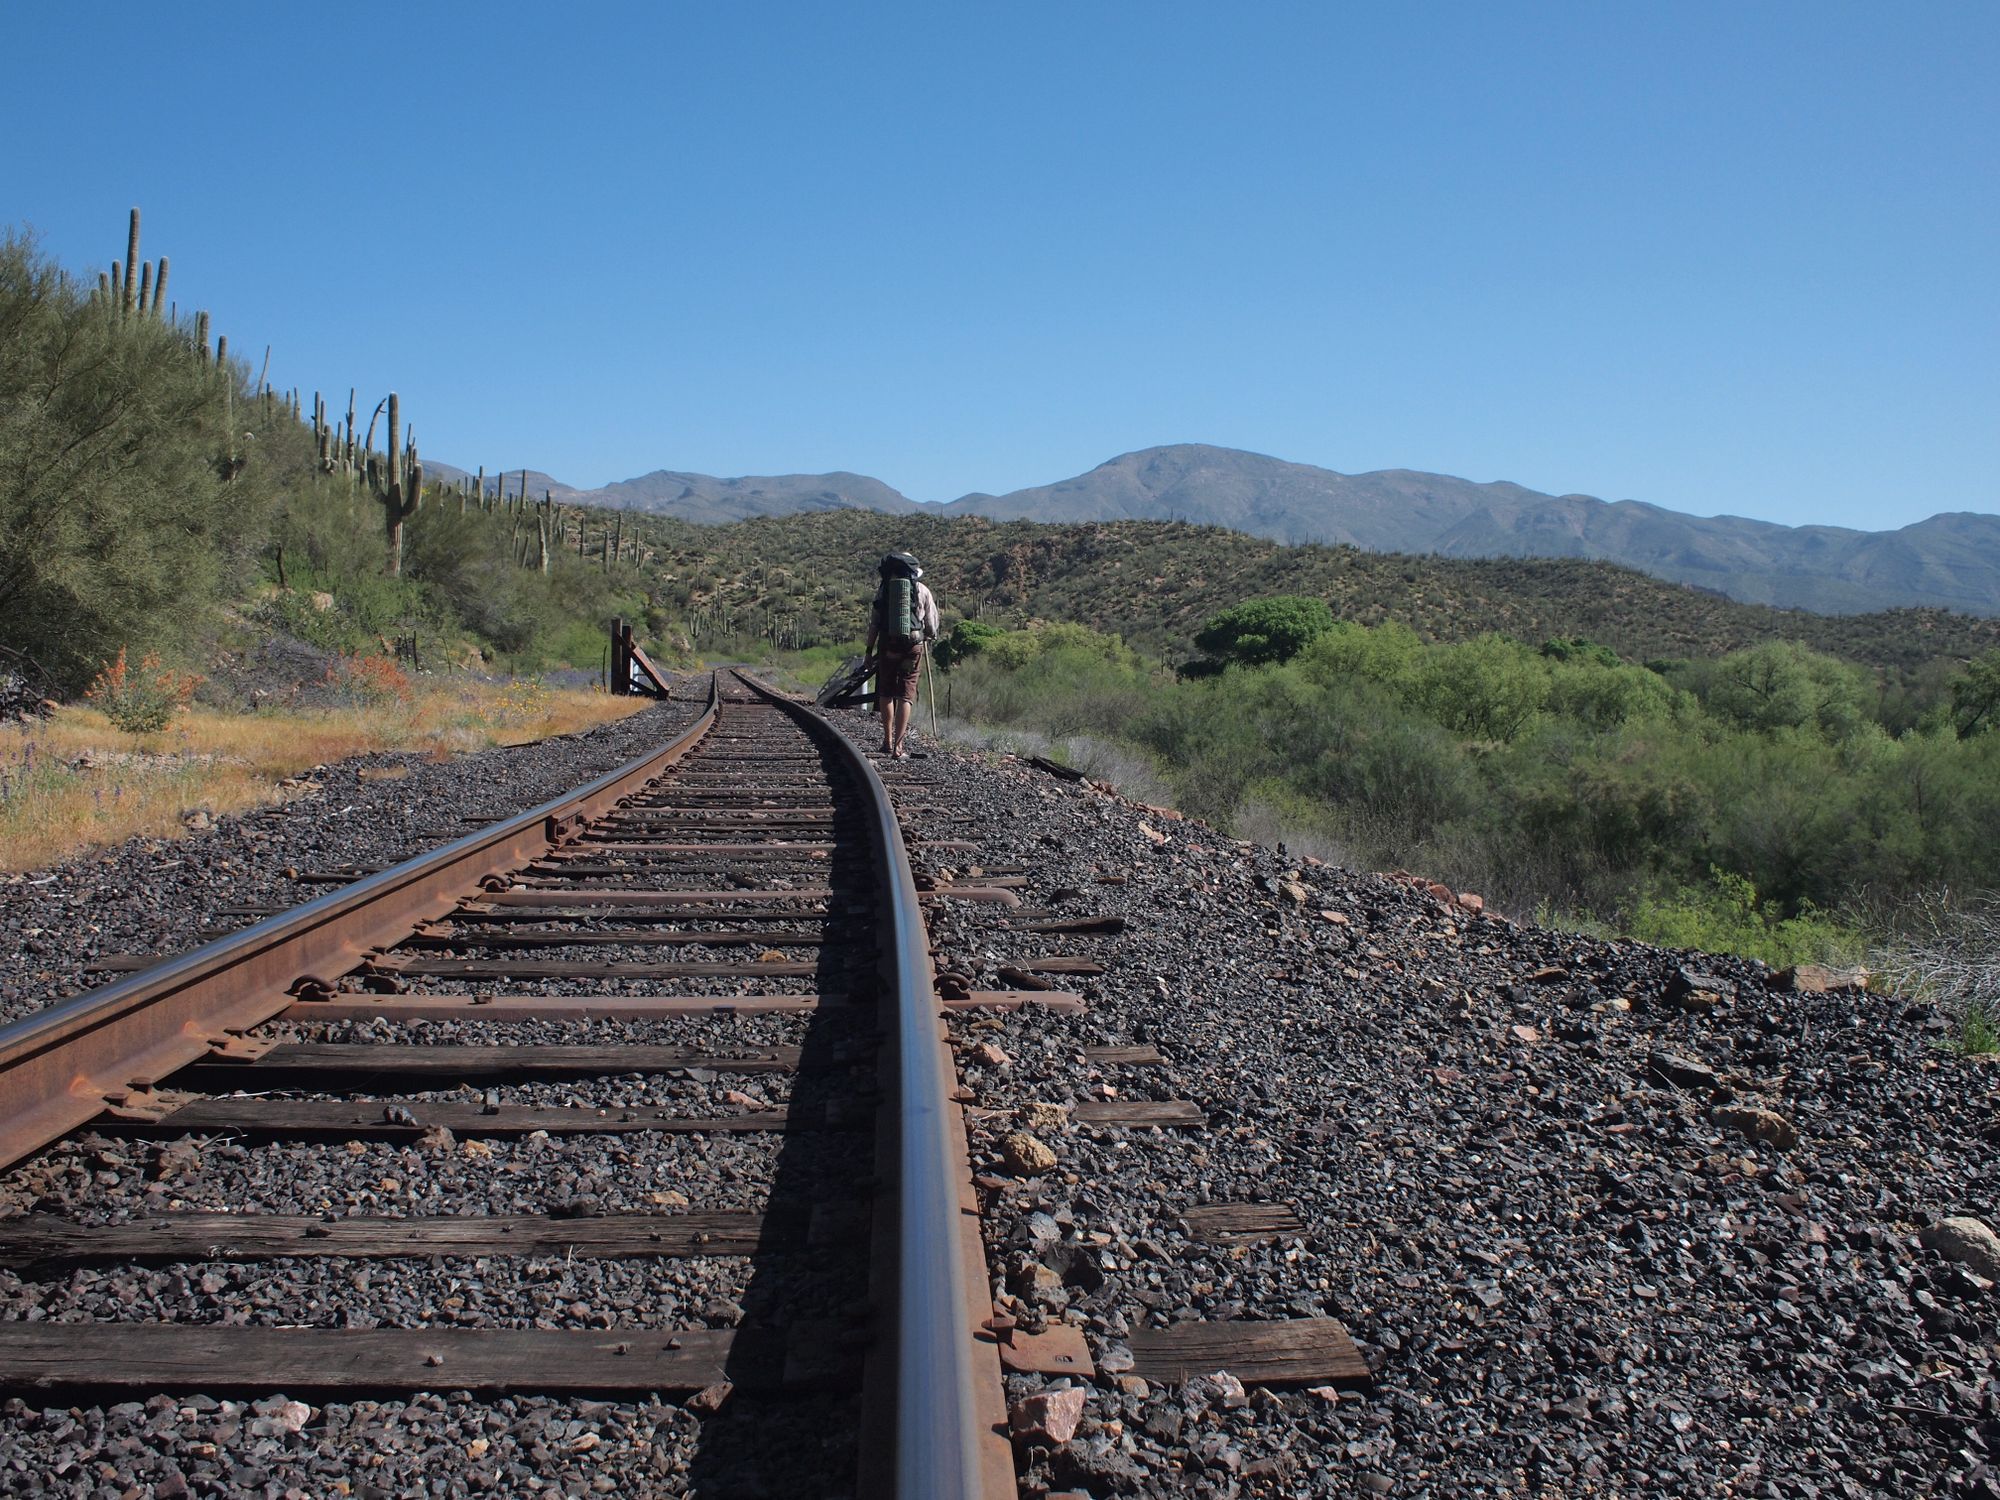 A man in a mountainous desert landscape, walking along railroad tracks. 